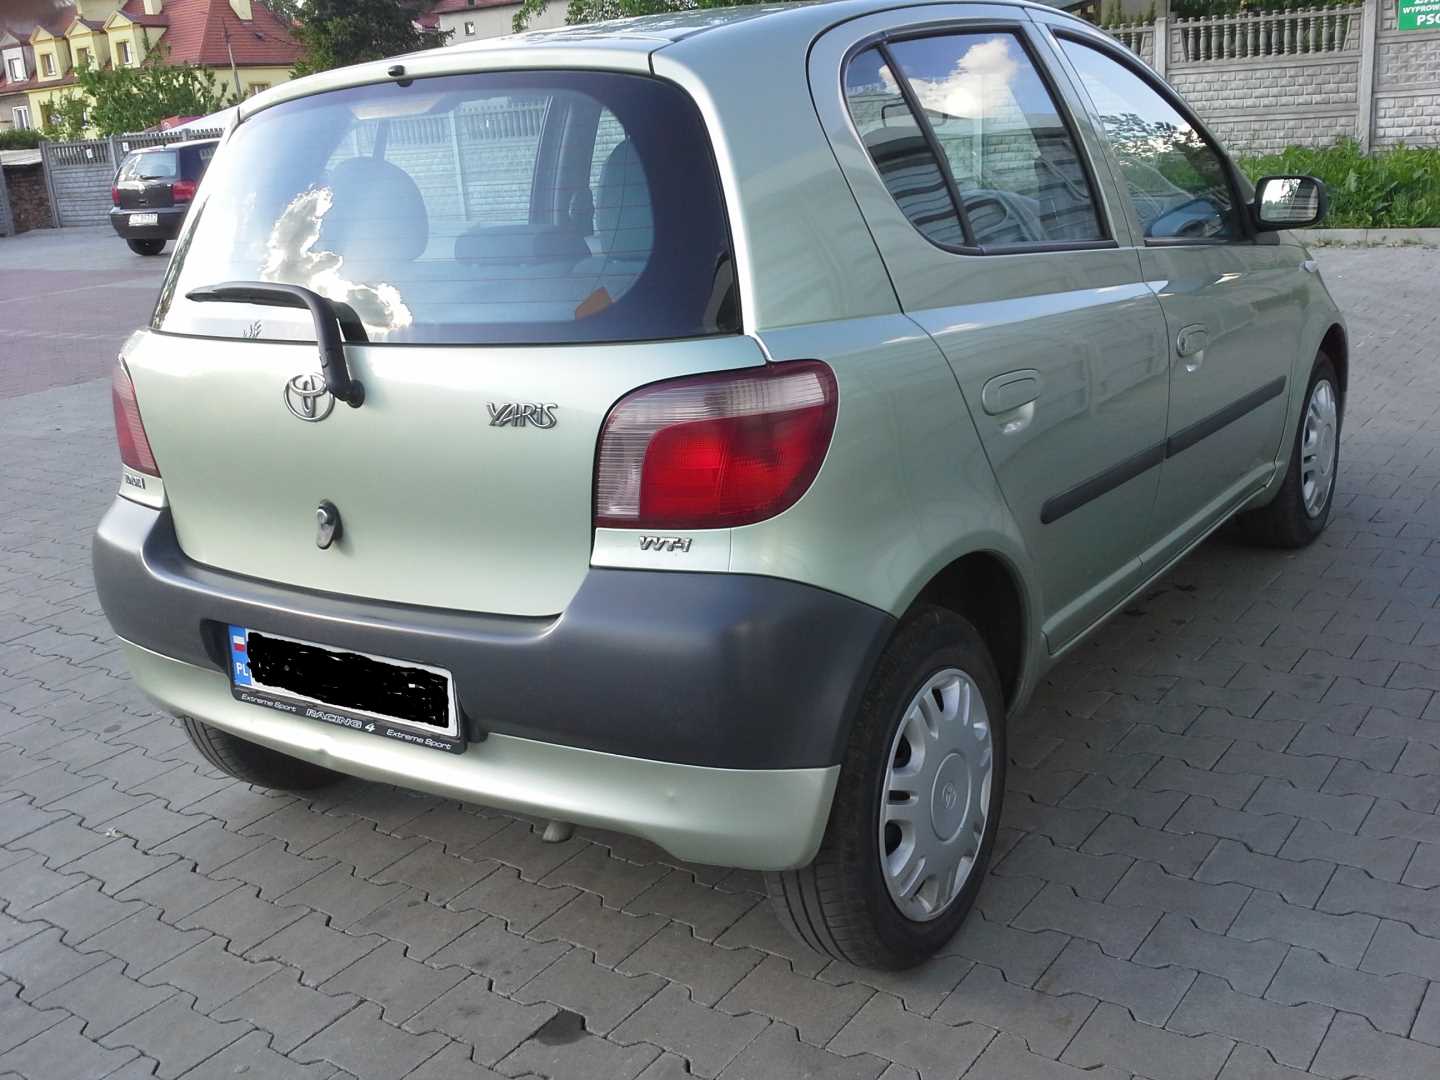 Toyota Yaris 1.0 benzyna 65 KM 2002r. (Zabrze) Autotrader.pl